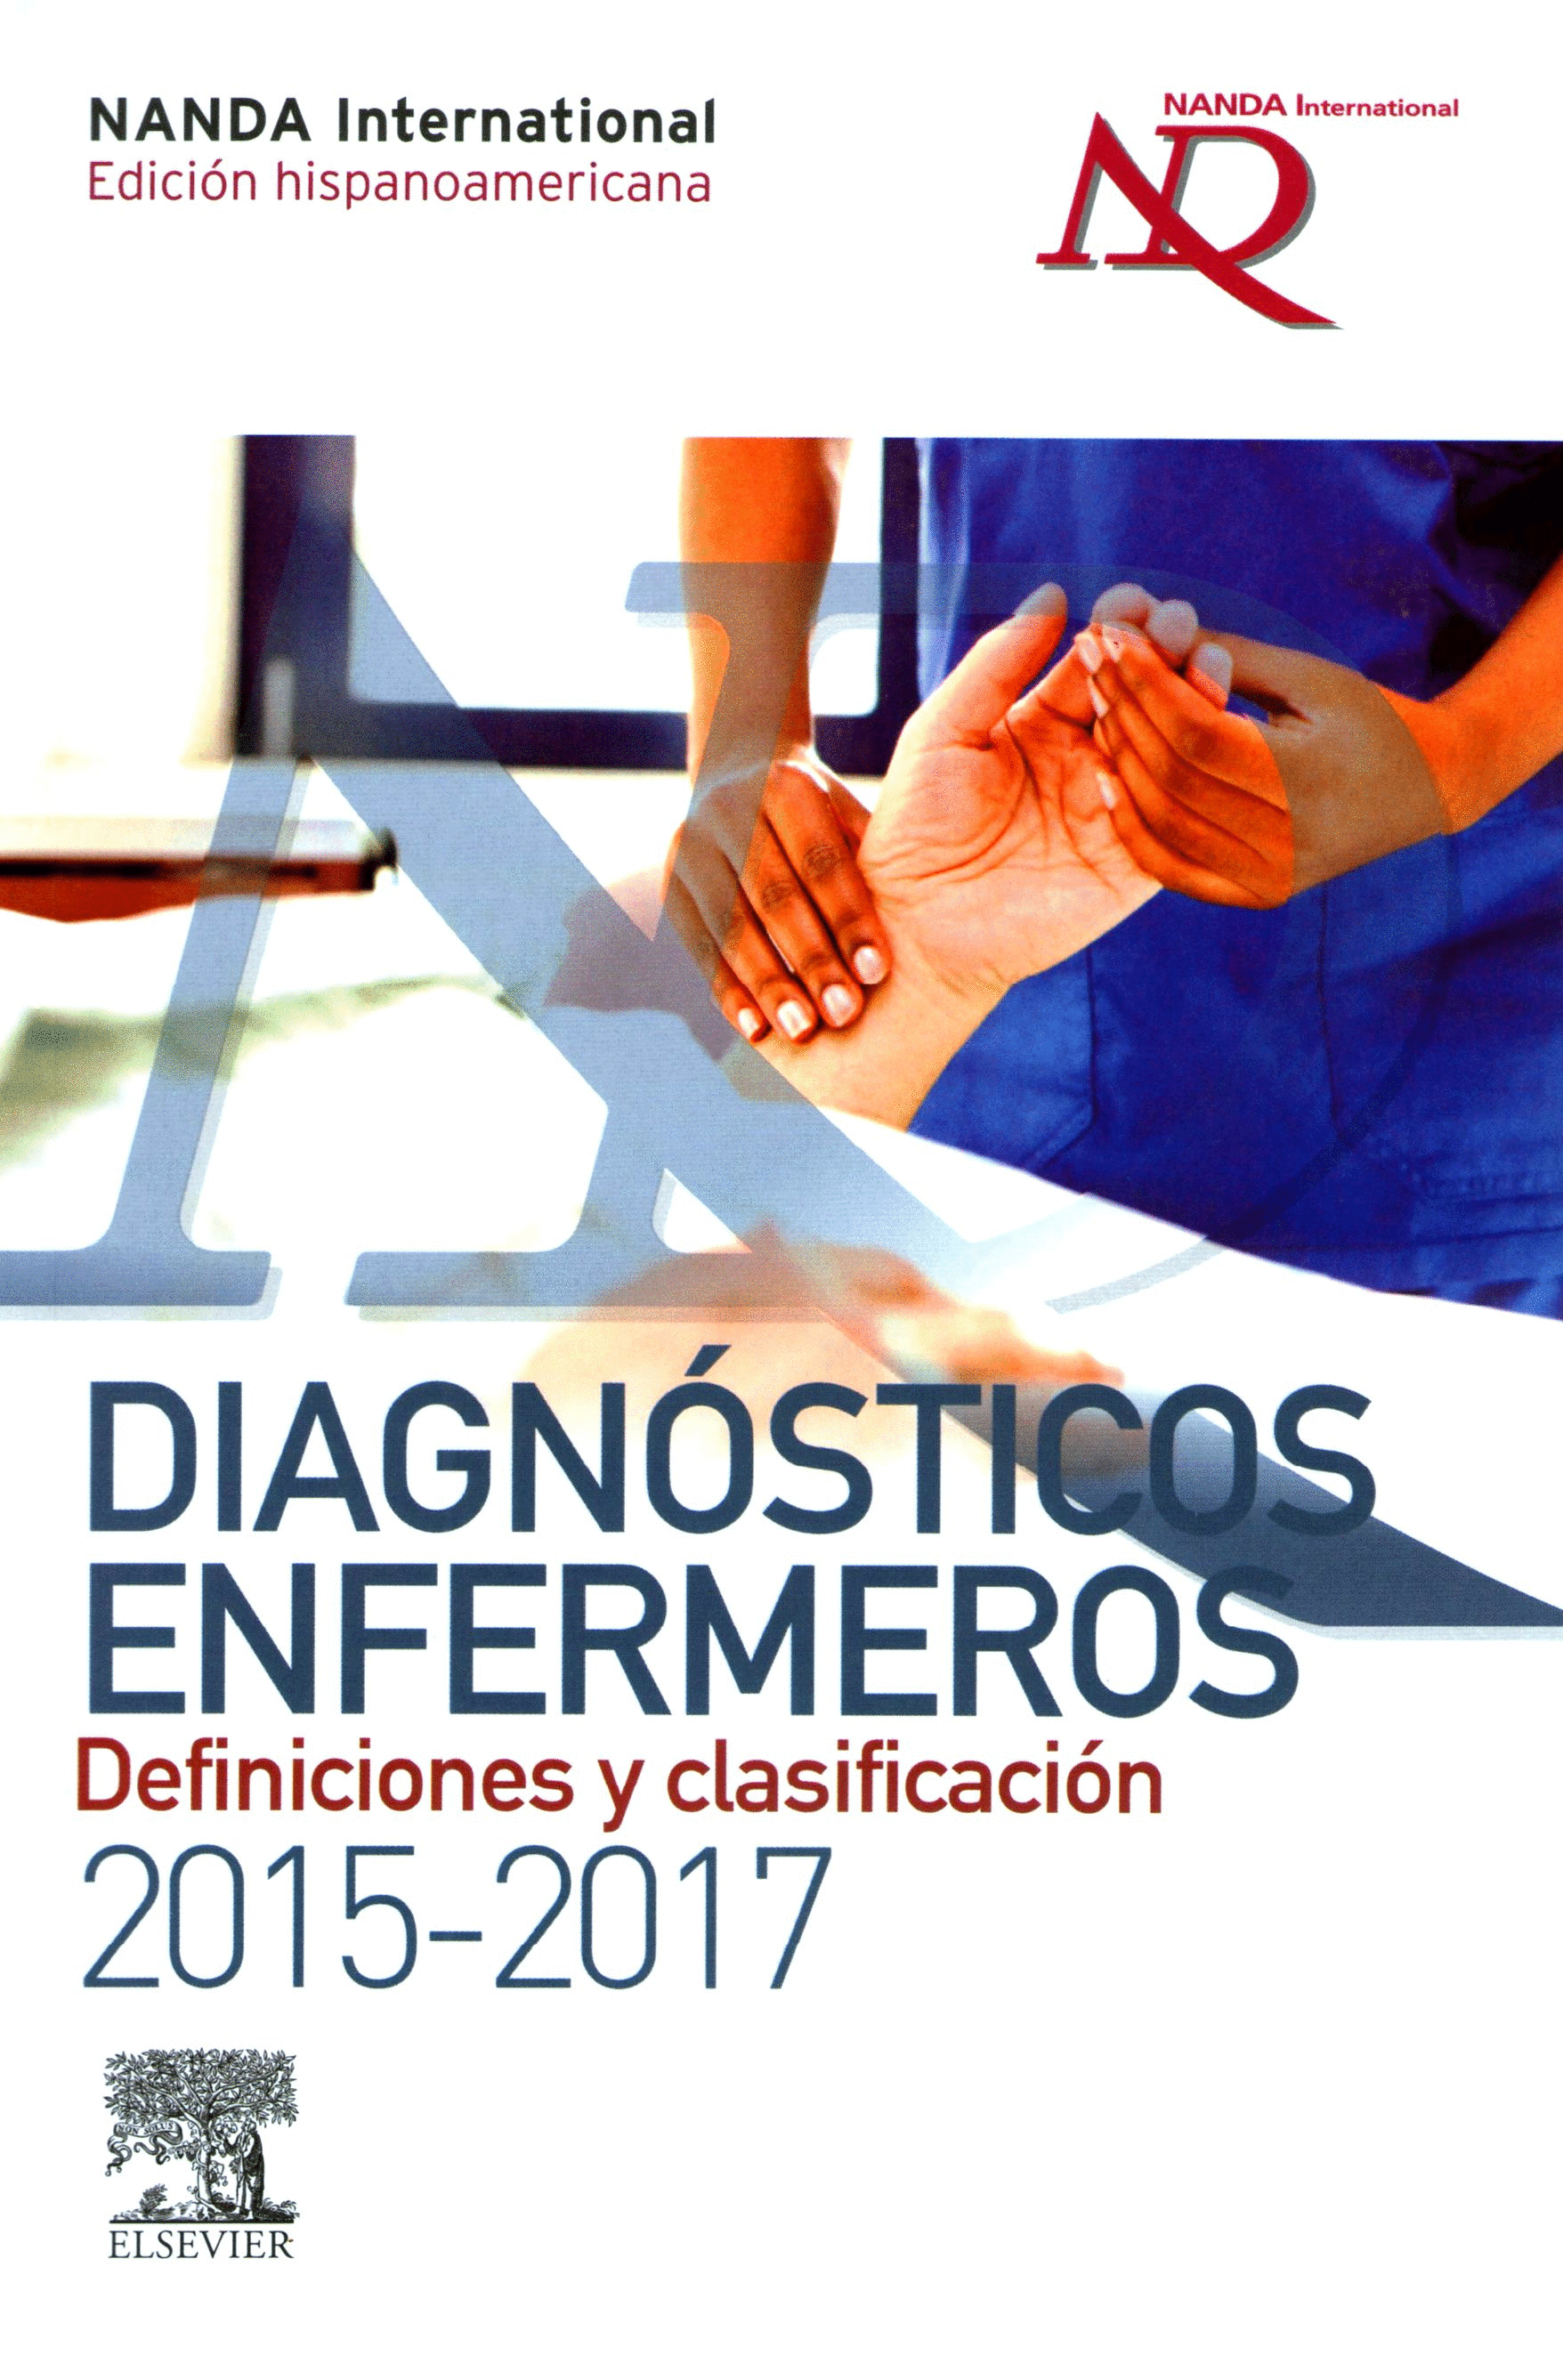 DIAGNÓSTICOS ENFERMEROS. DEFINICIONES Y CLASIFICACIÓN, 2015-2017